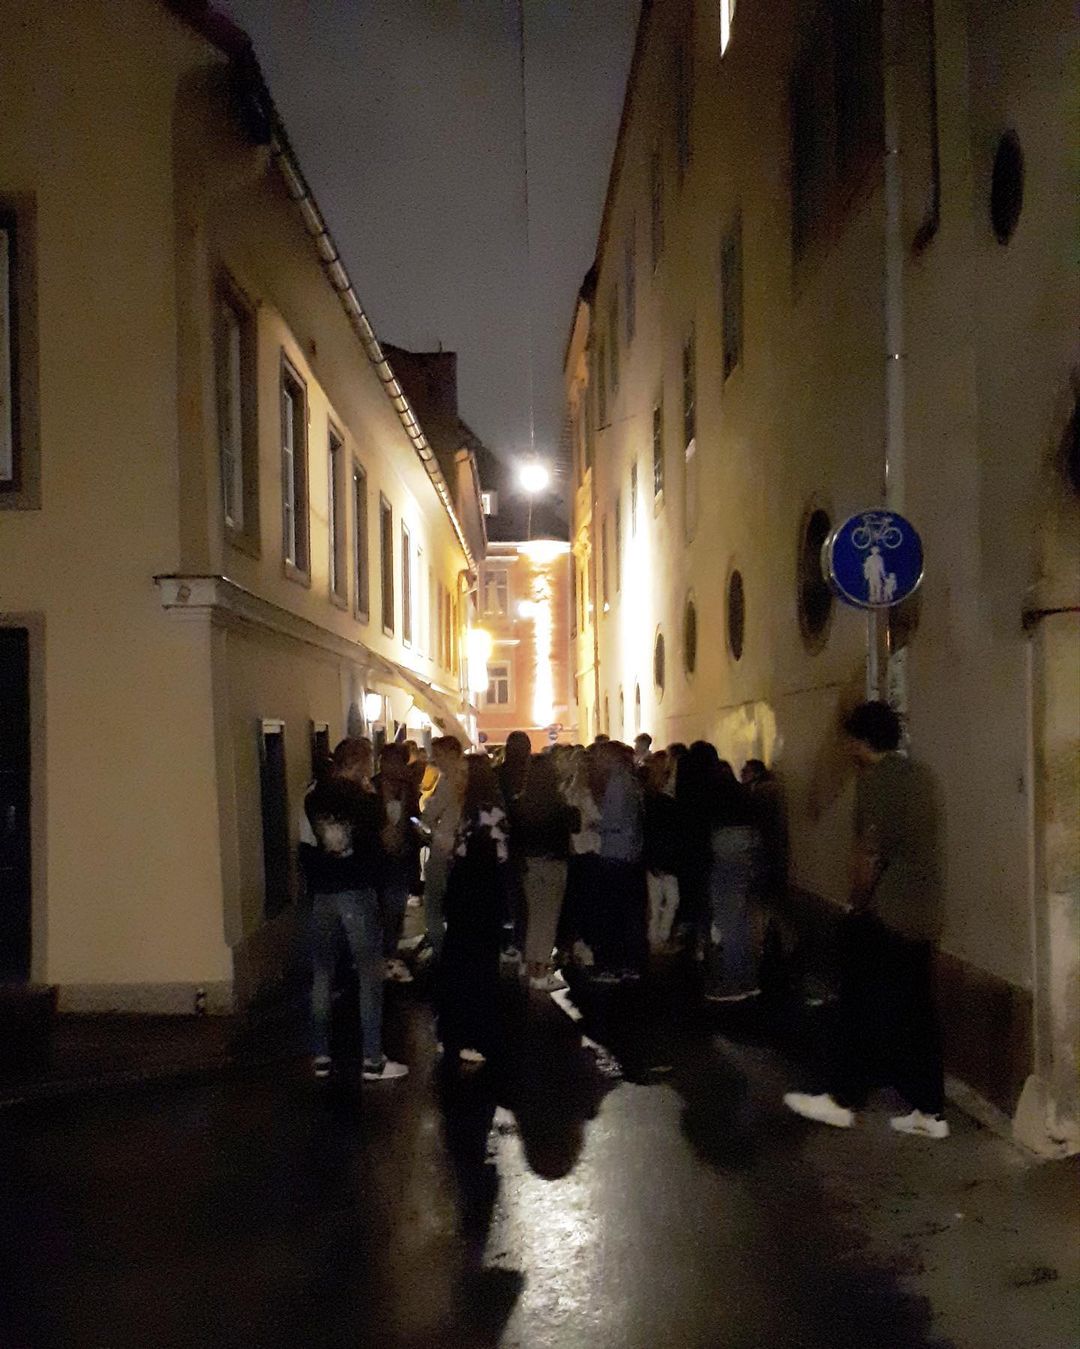 Eine Gasse in der Grazer Innenstadt am Abend. Es ist dunkel und mit einigen Lichtern aufgehängt zwischen den Gebäuden erkennt man die Umrisse vieler junger Menschen vor einer Lokalität.